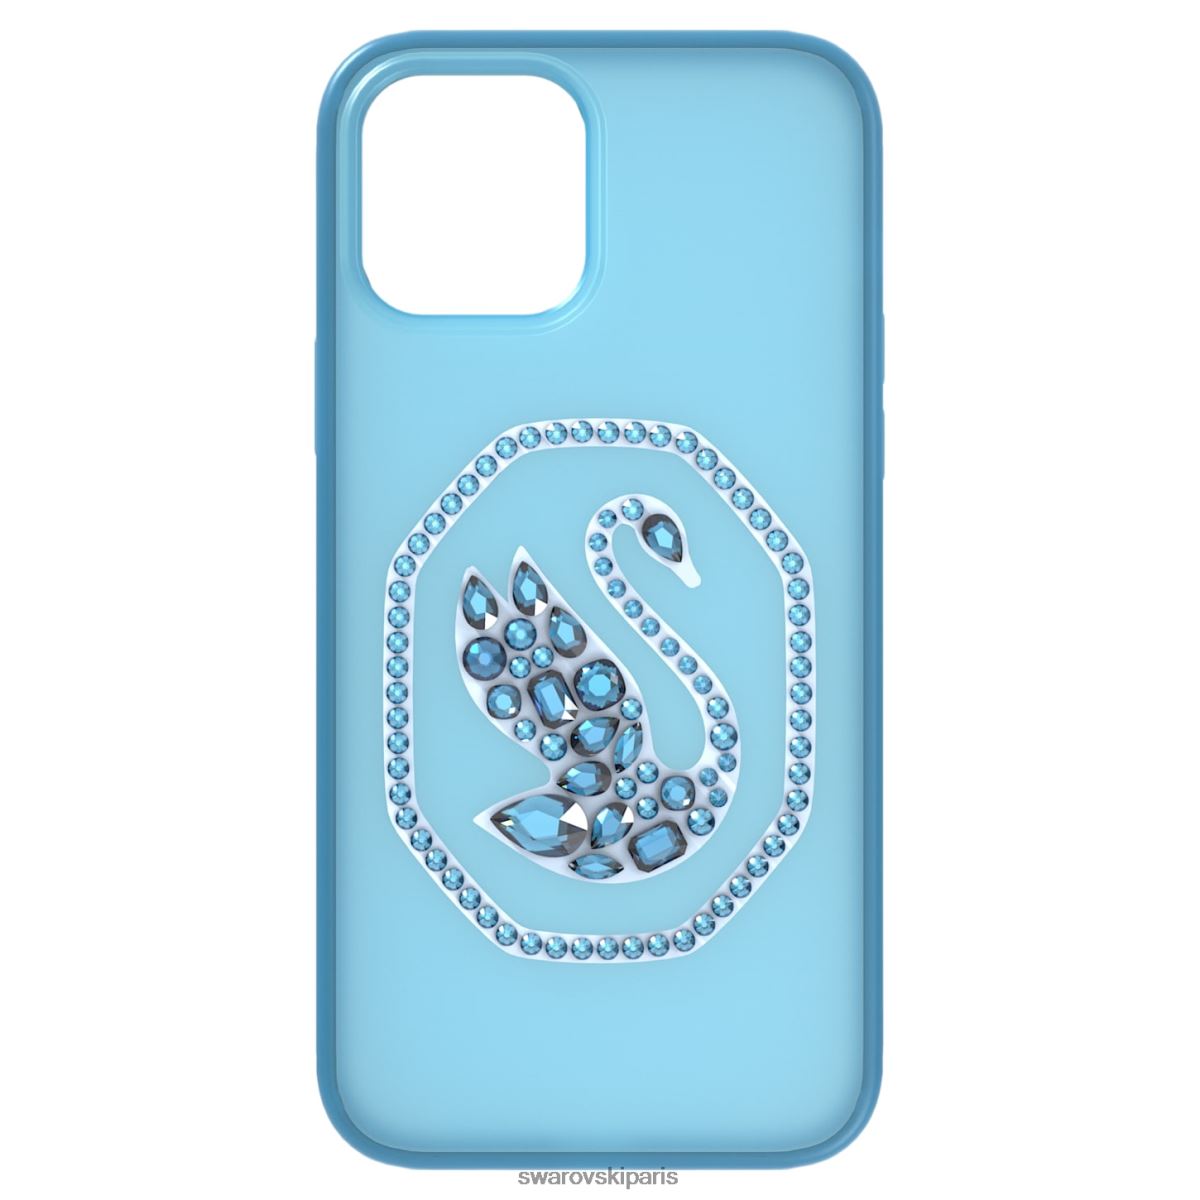 accessoires Swarovski étui pour smartphone bleu RZD0XJ1383